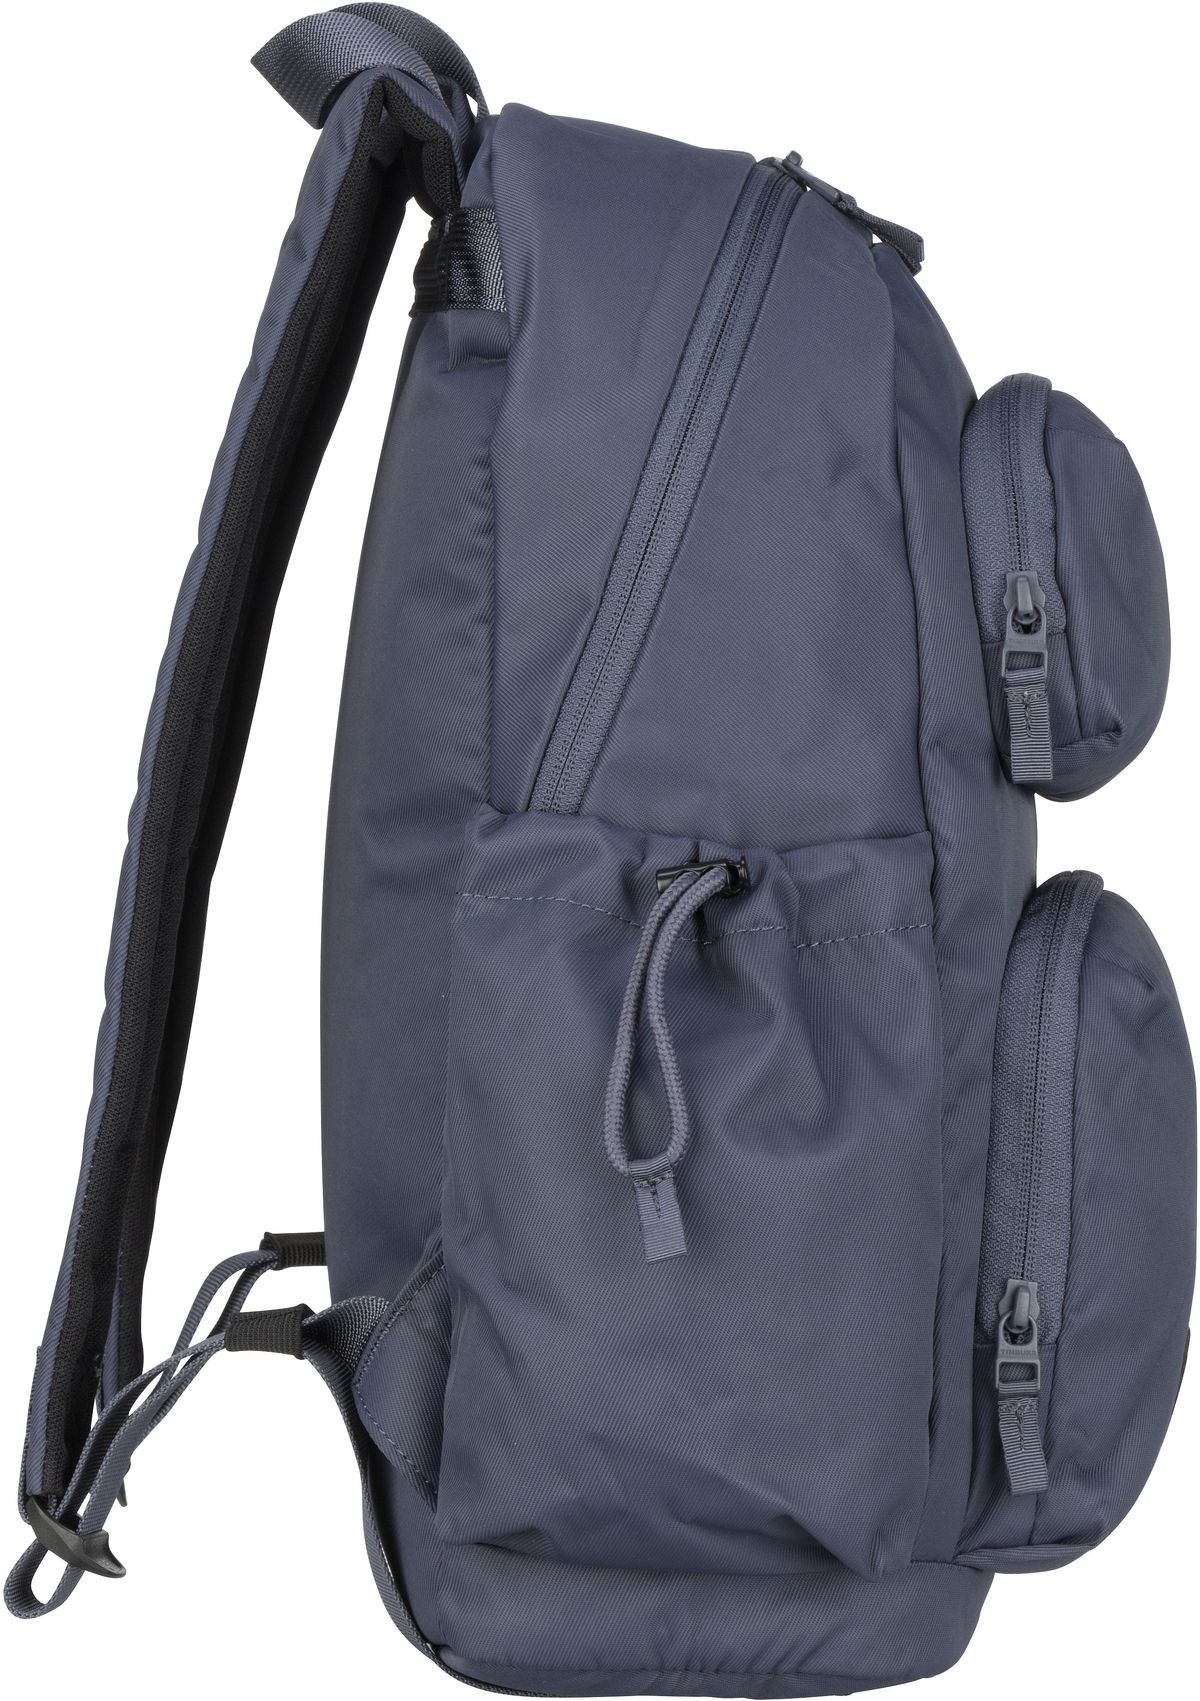 Timbuk2 Vapor Backpack - Granite